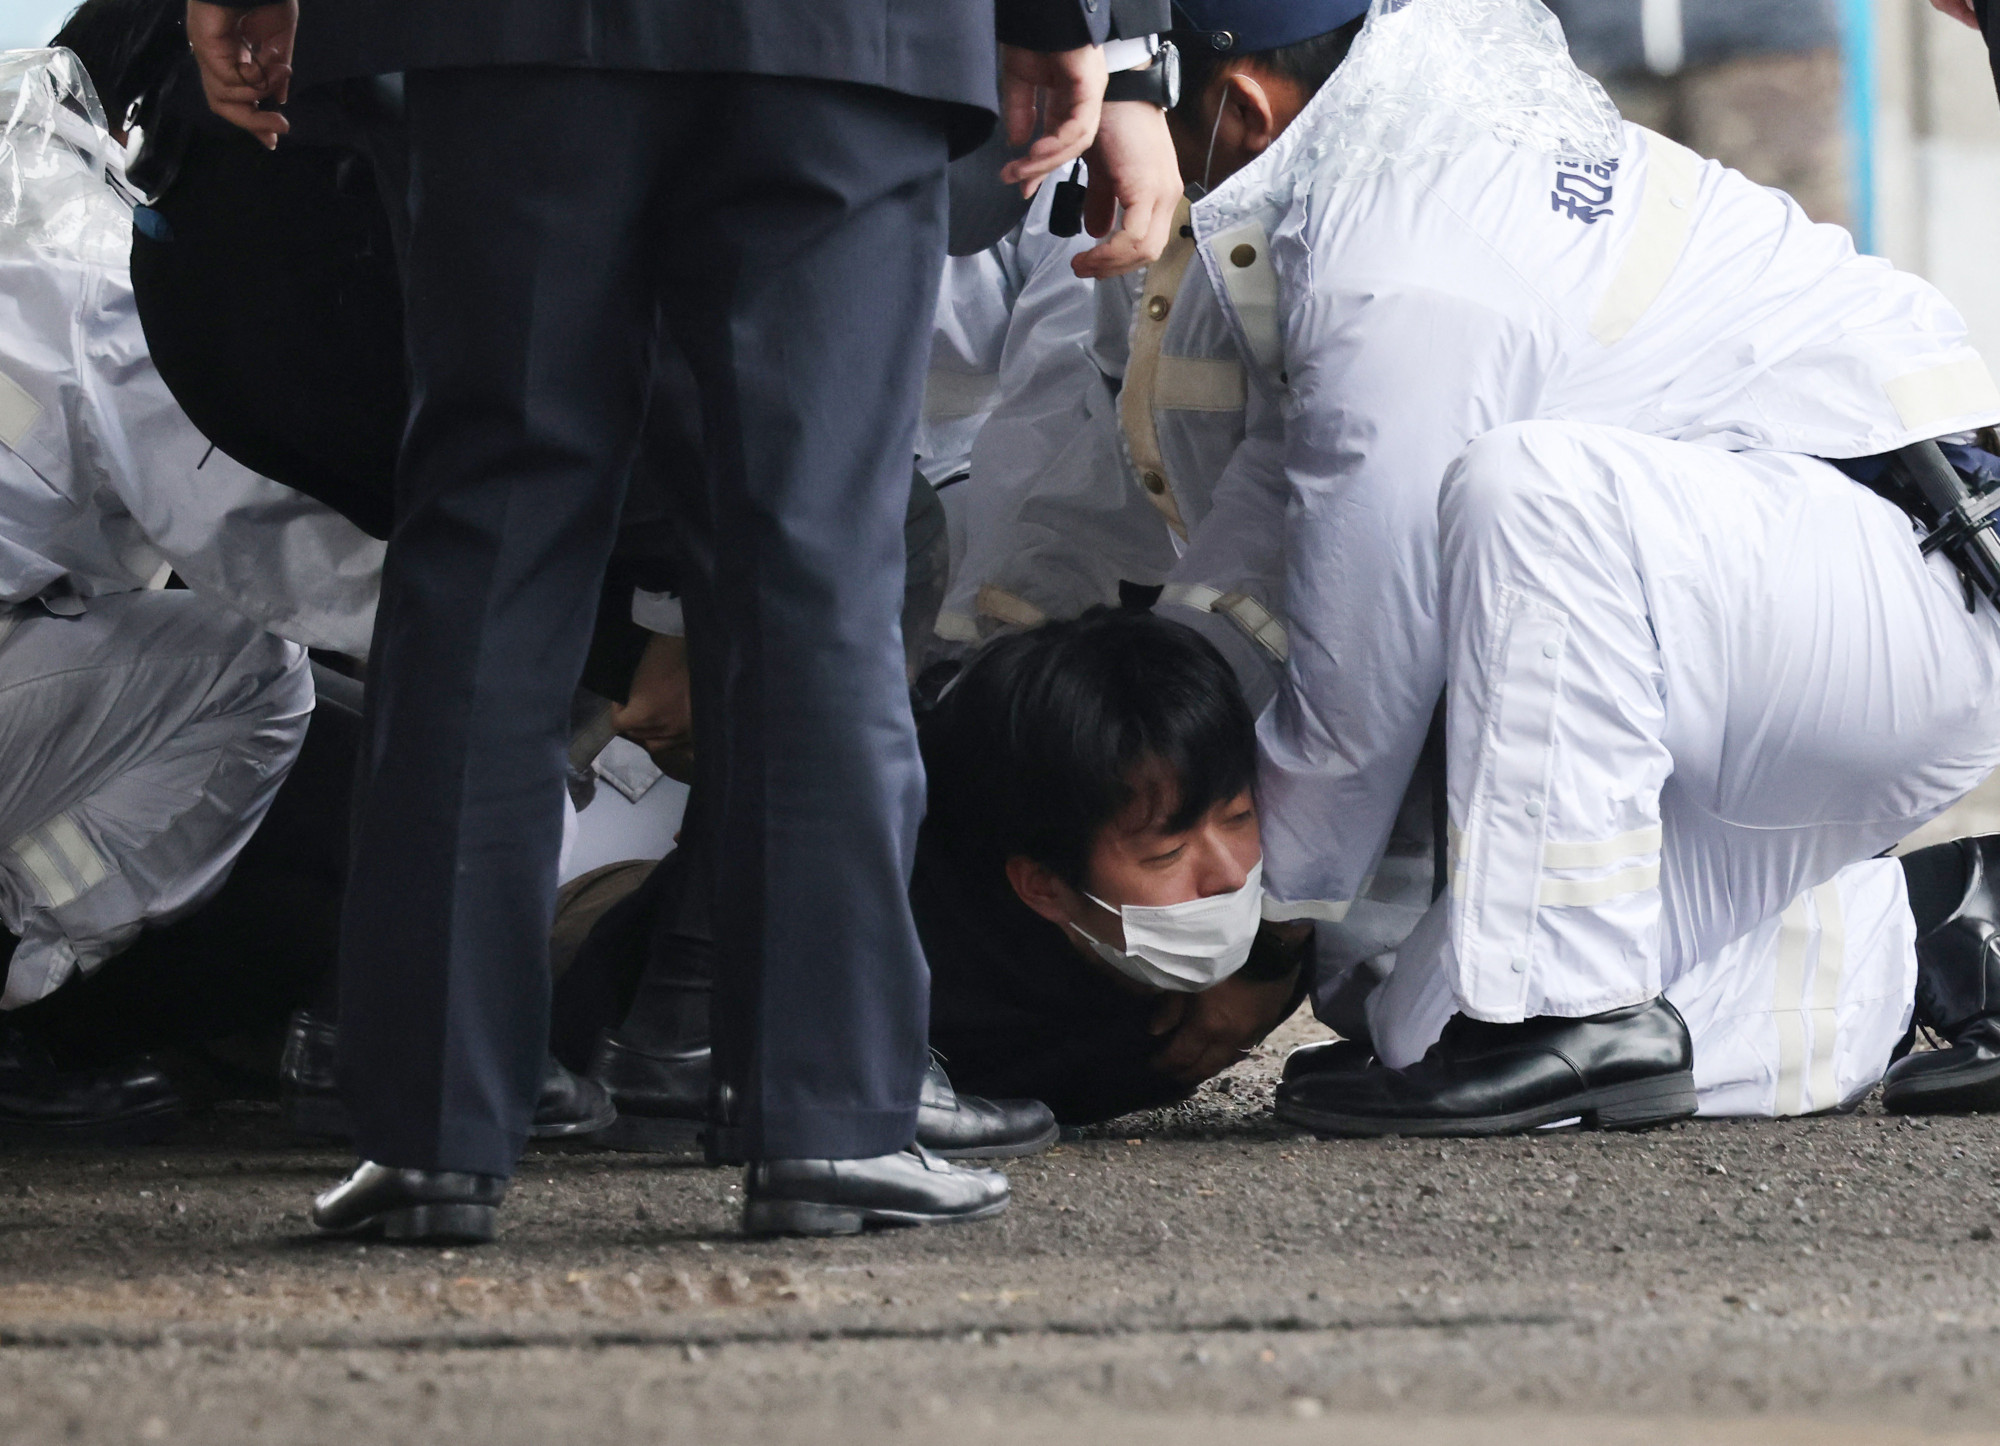 Nyilvános rendezvényen dobtak füstbombának tűnő tárgyat Fumio Kisida japán miniszterelnökre